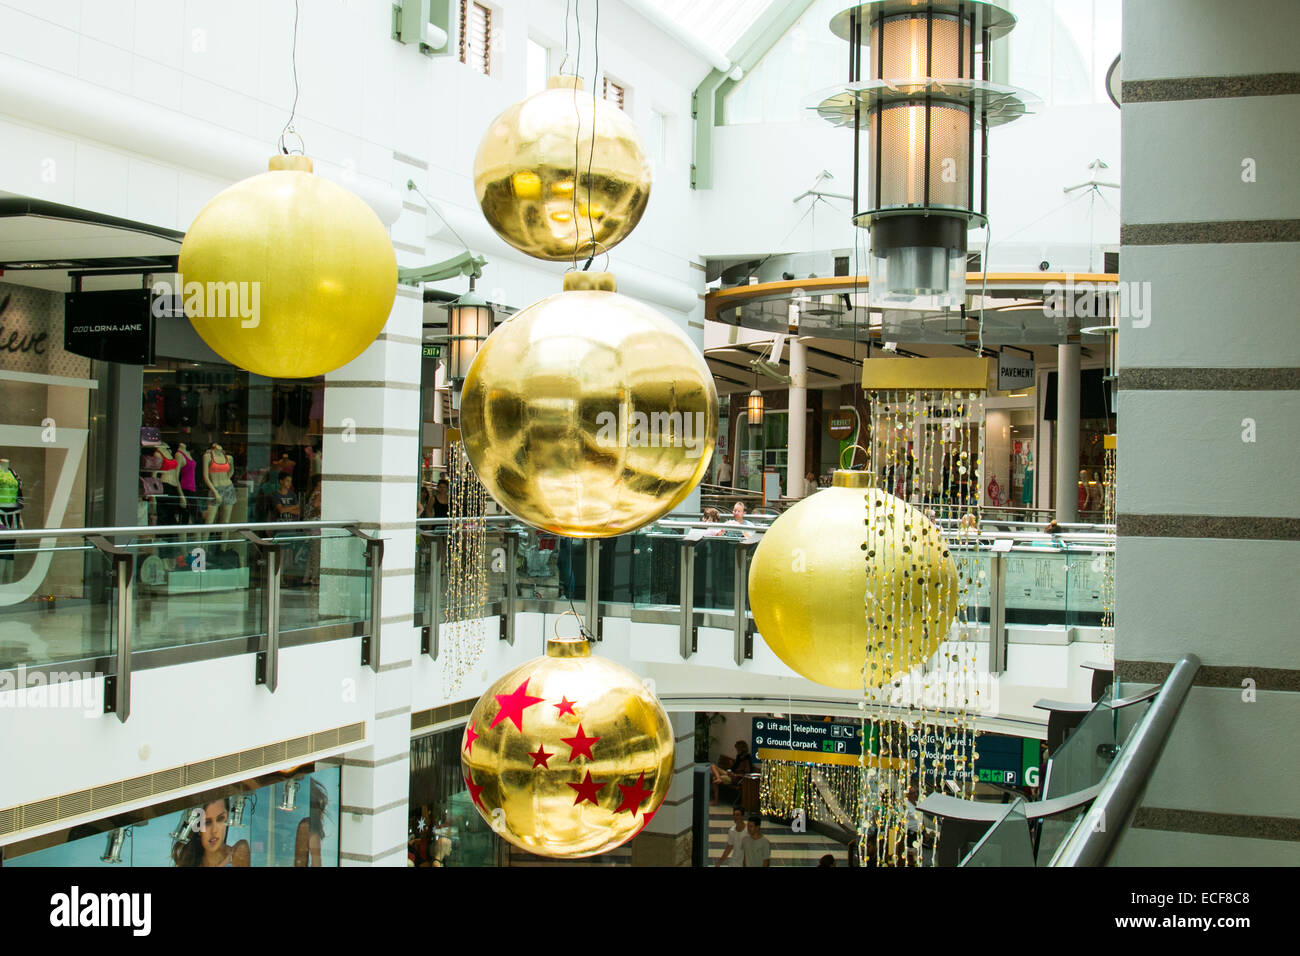 Decoraciones de Navidad gigante warringah mall shopping center en el norte de Sydney, Nueva Gales del Sur, Australia Foto de stock